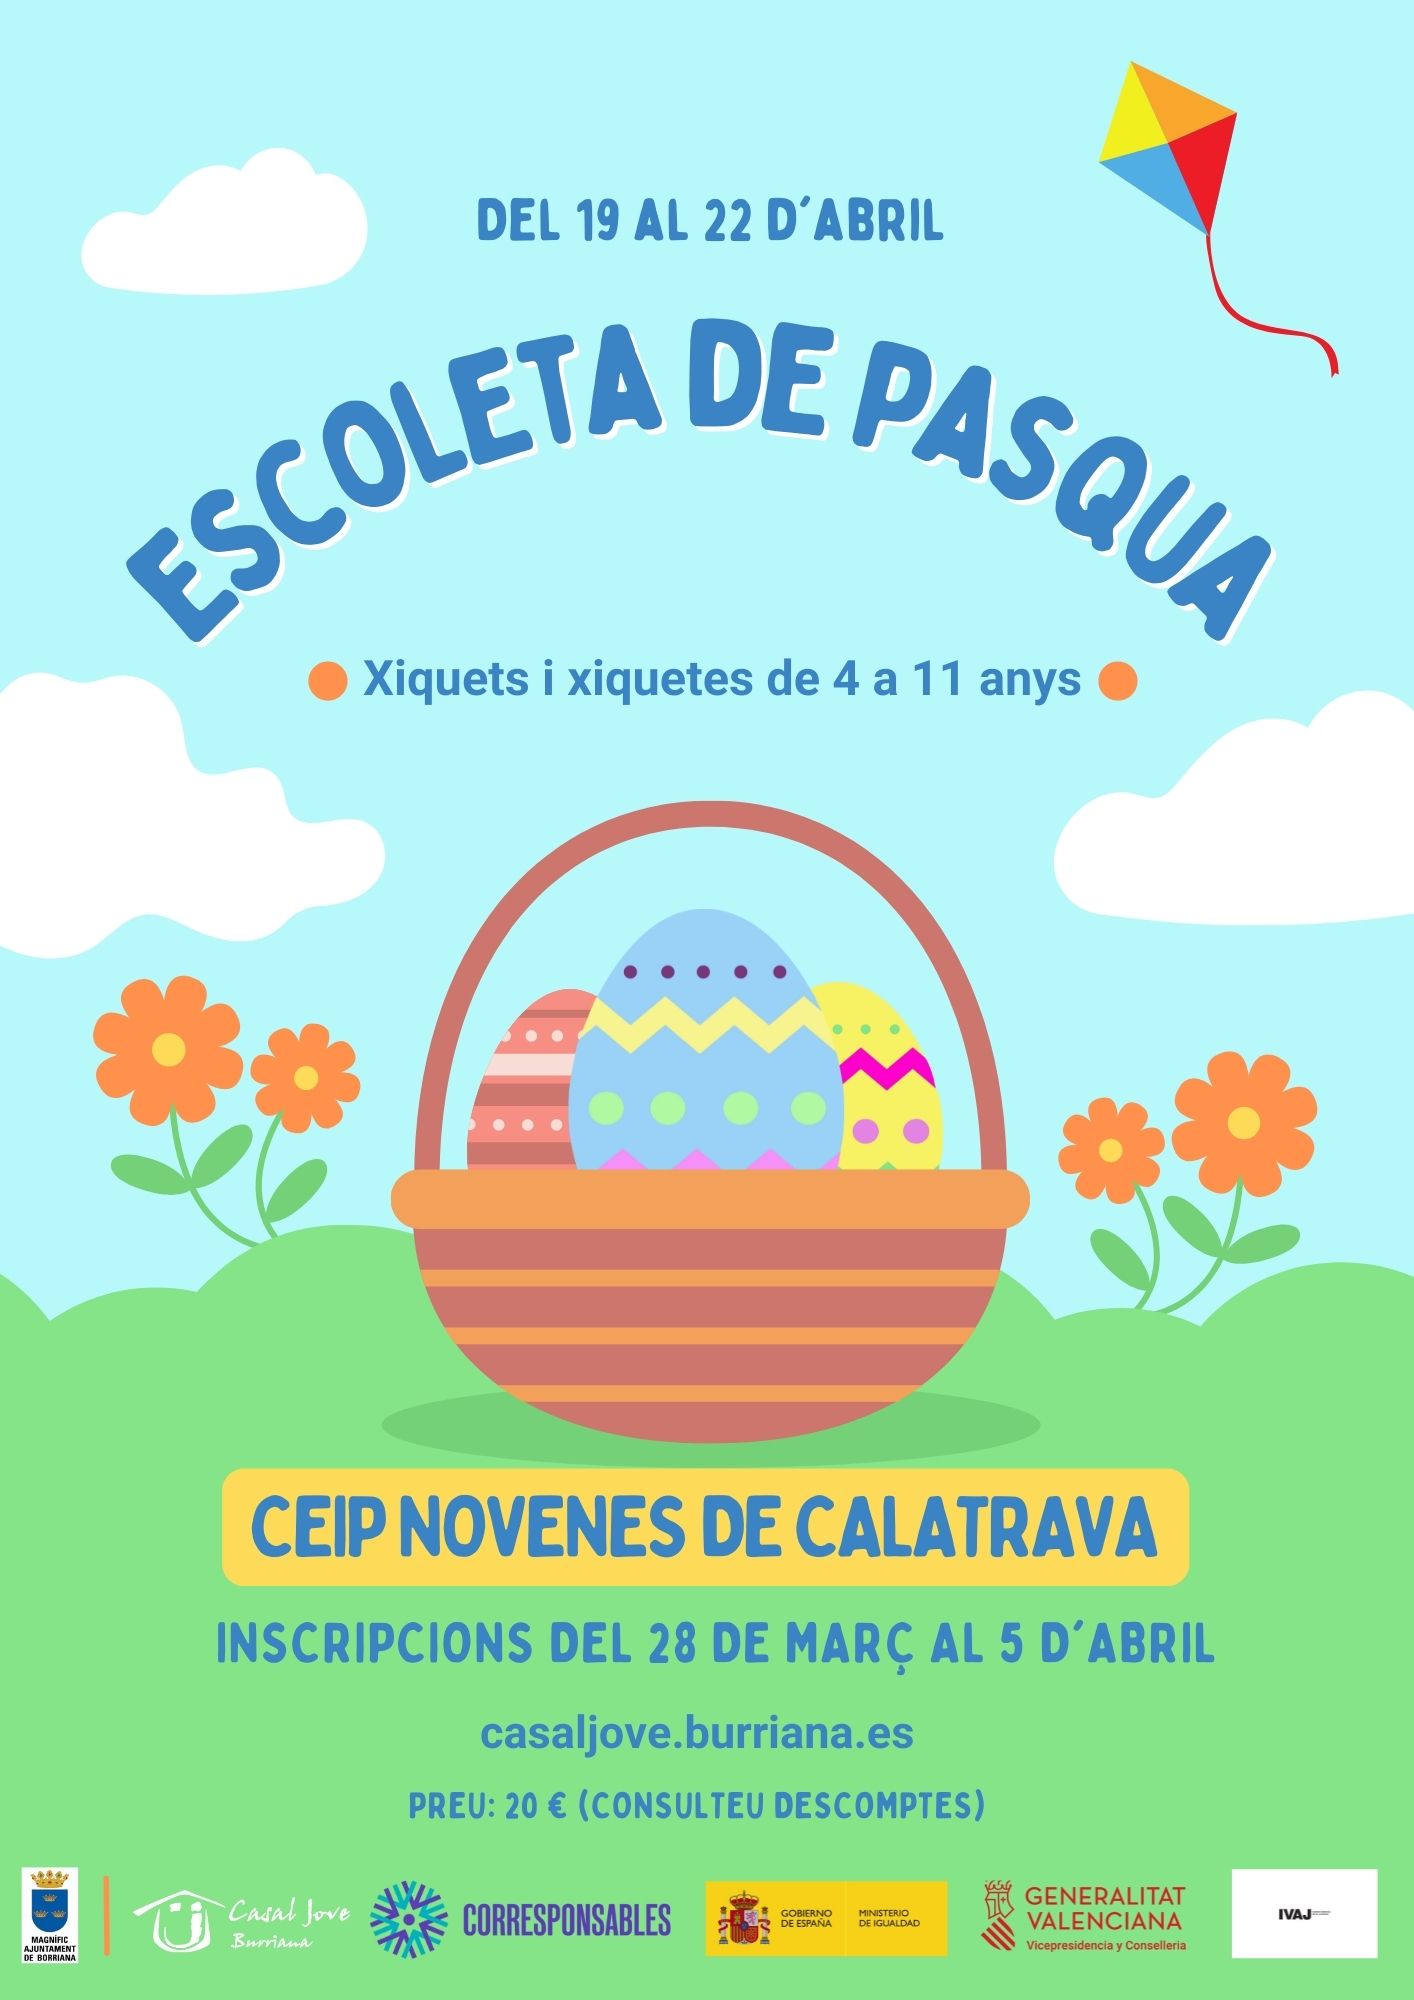 Burriana abre el período de inscripción para la Escoleta de Pasqua